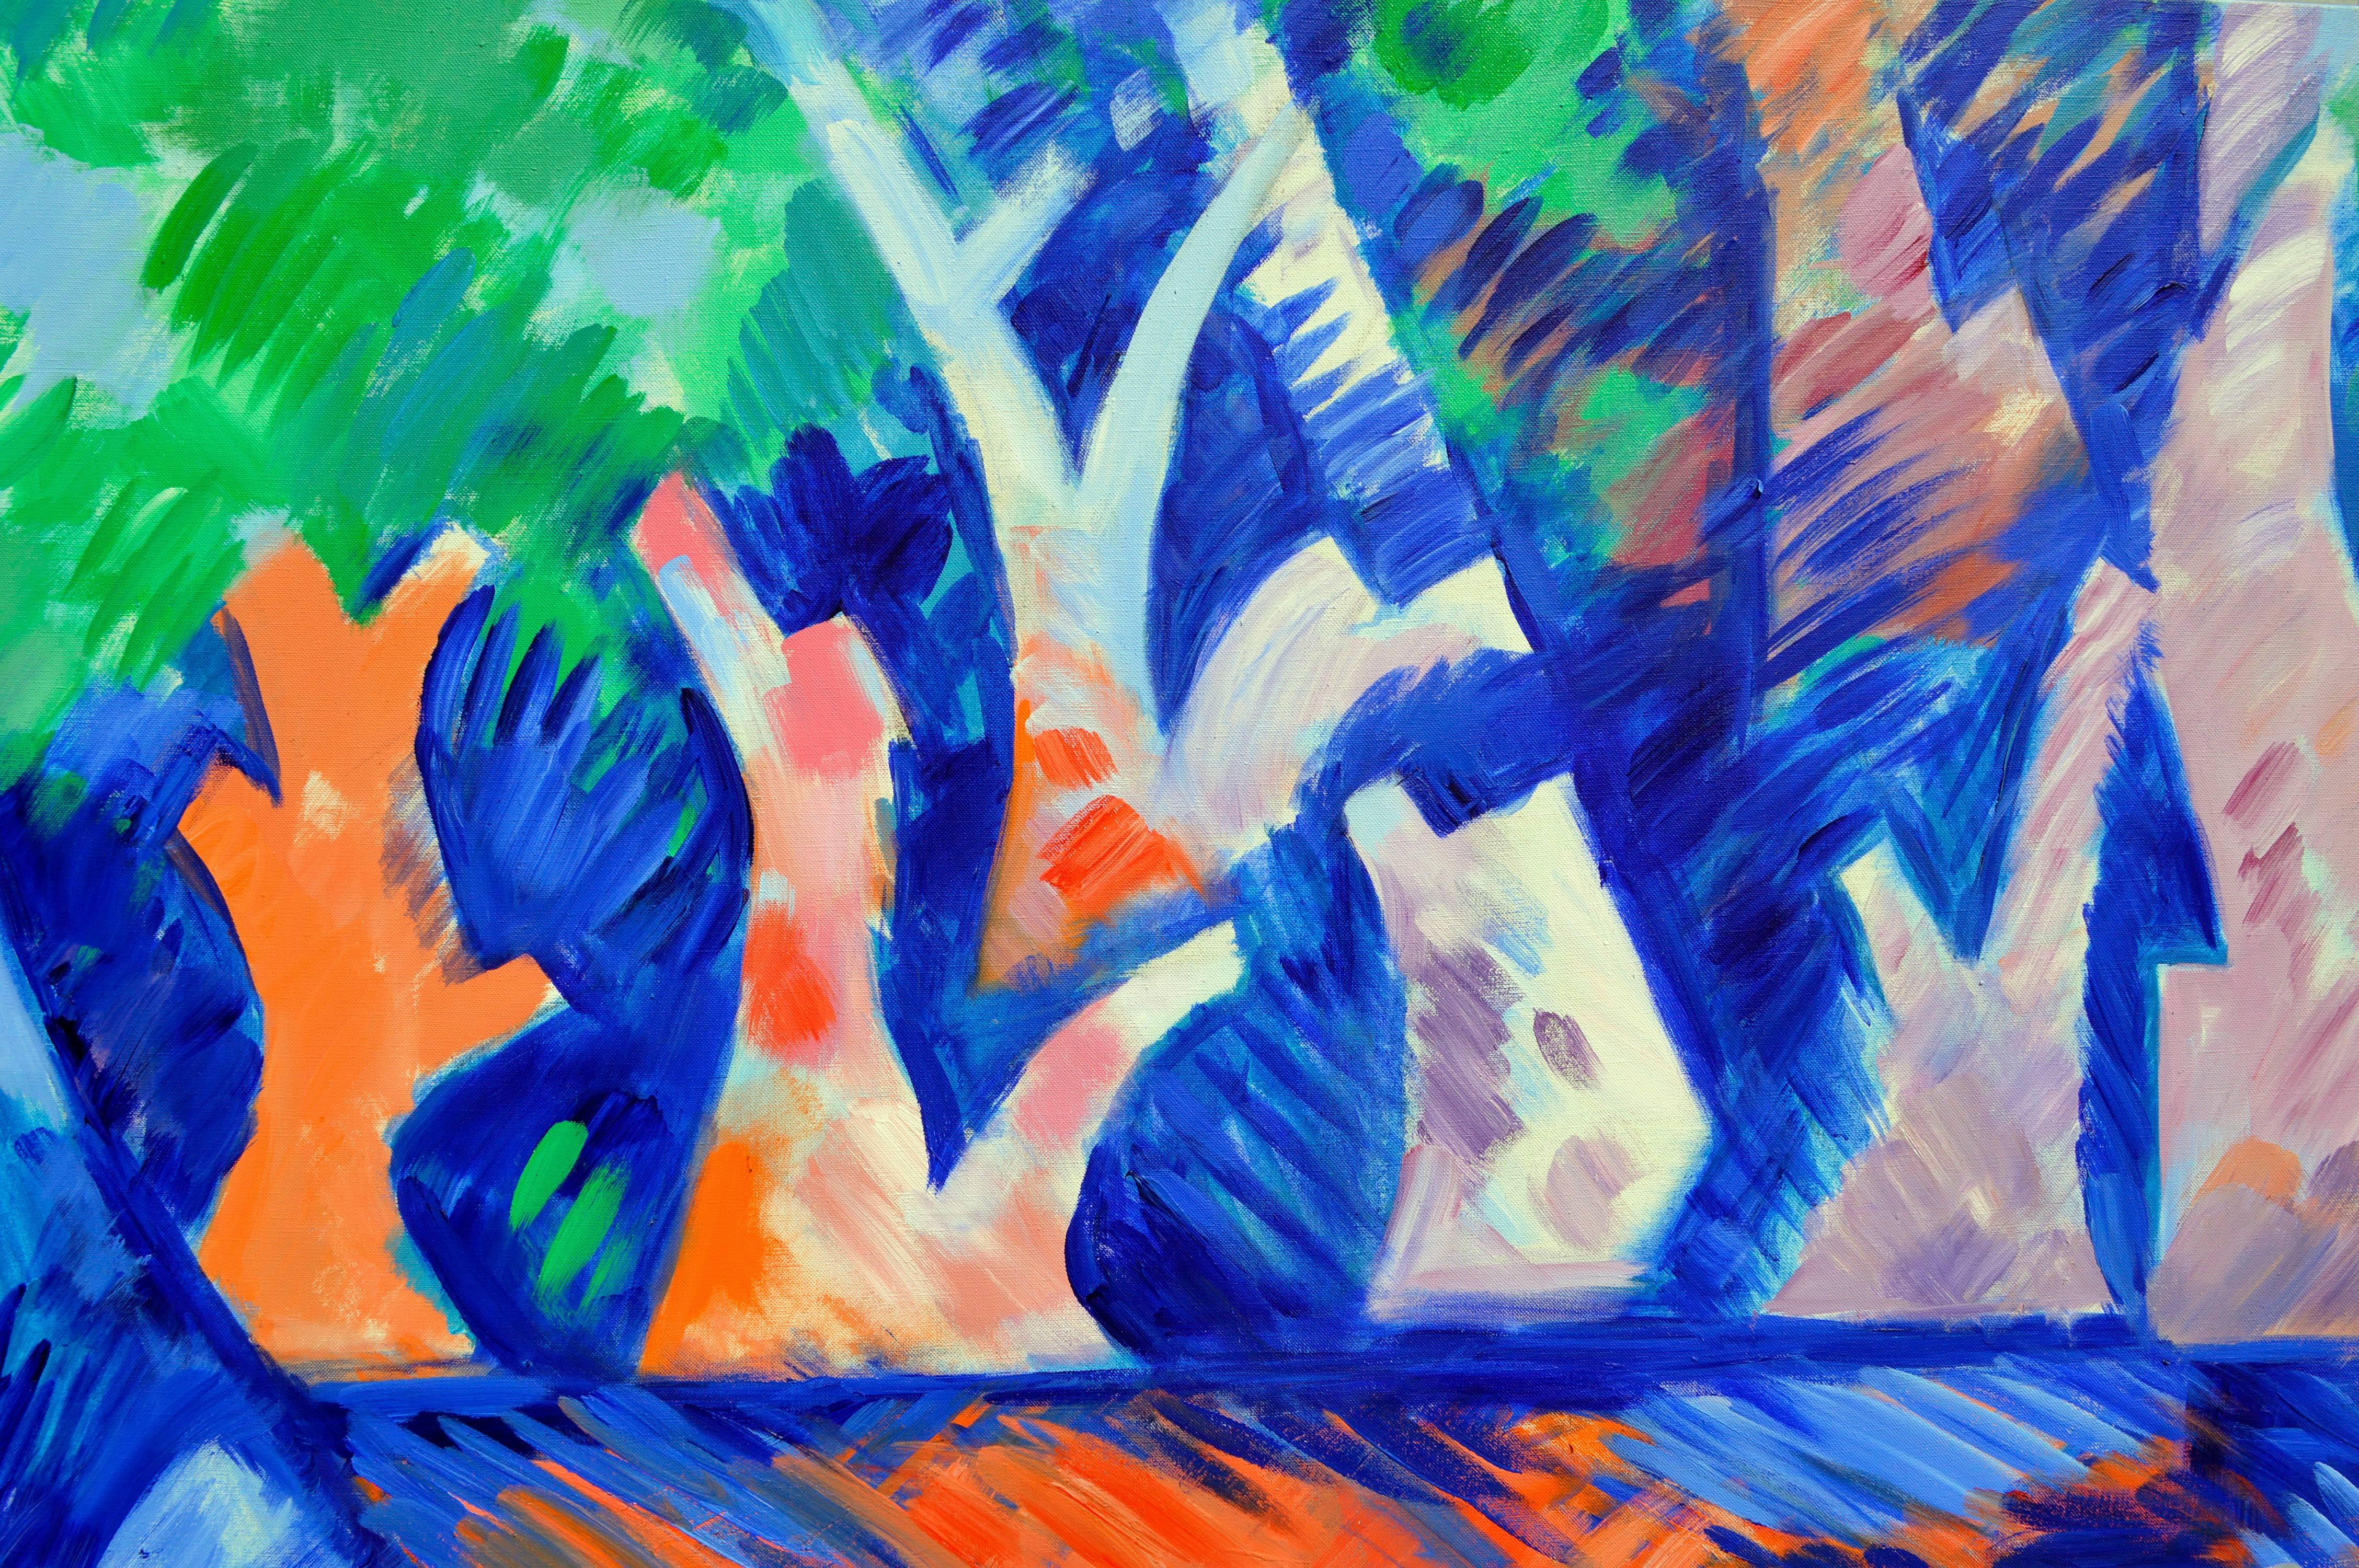 Abstrakte geometrische Landschaft in großformatigem Maßstab - Bäume über Wasser – Painting von Erle Loran